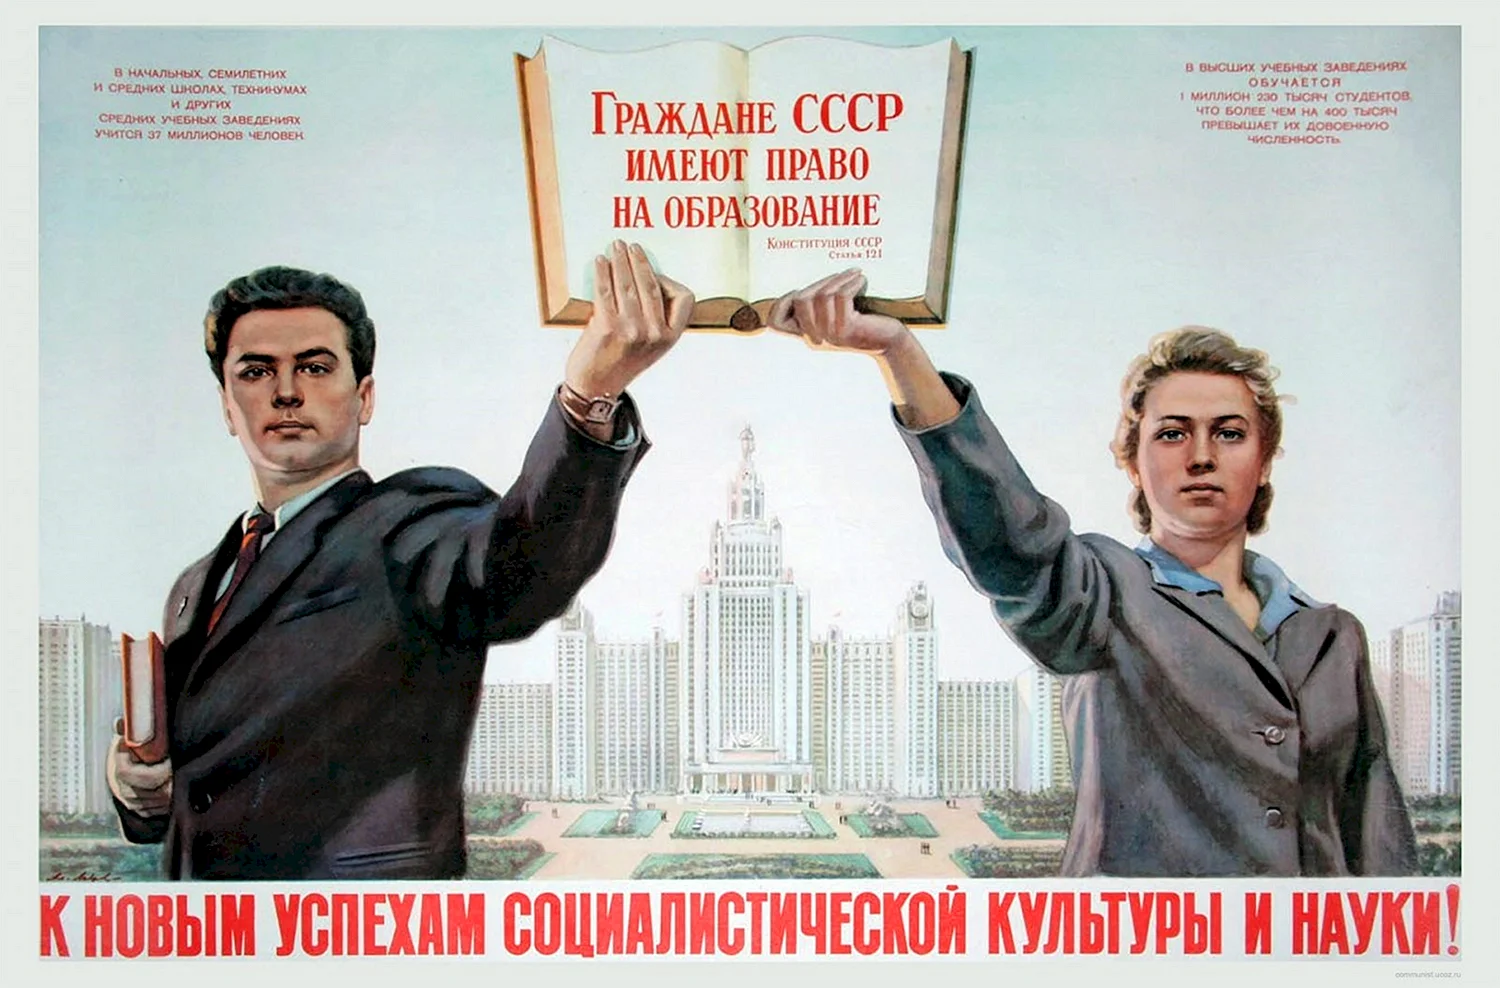 Образование СССР